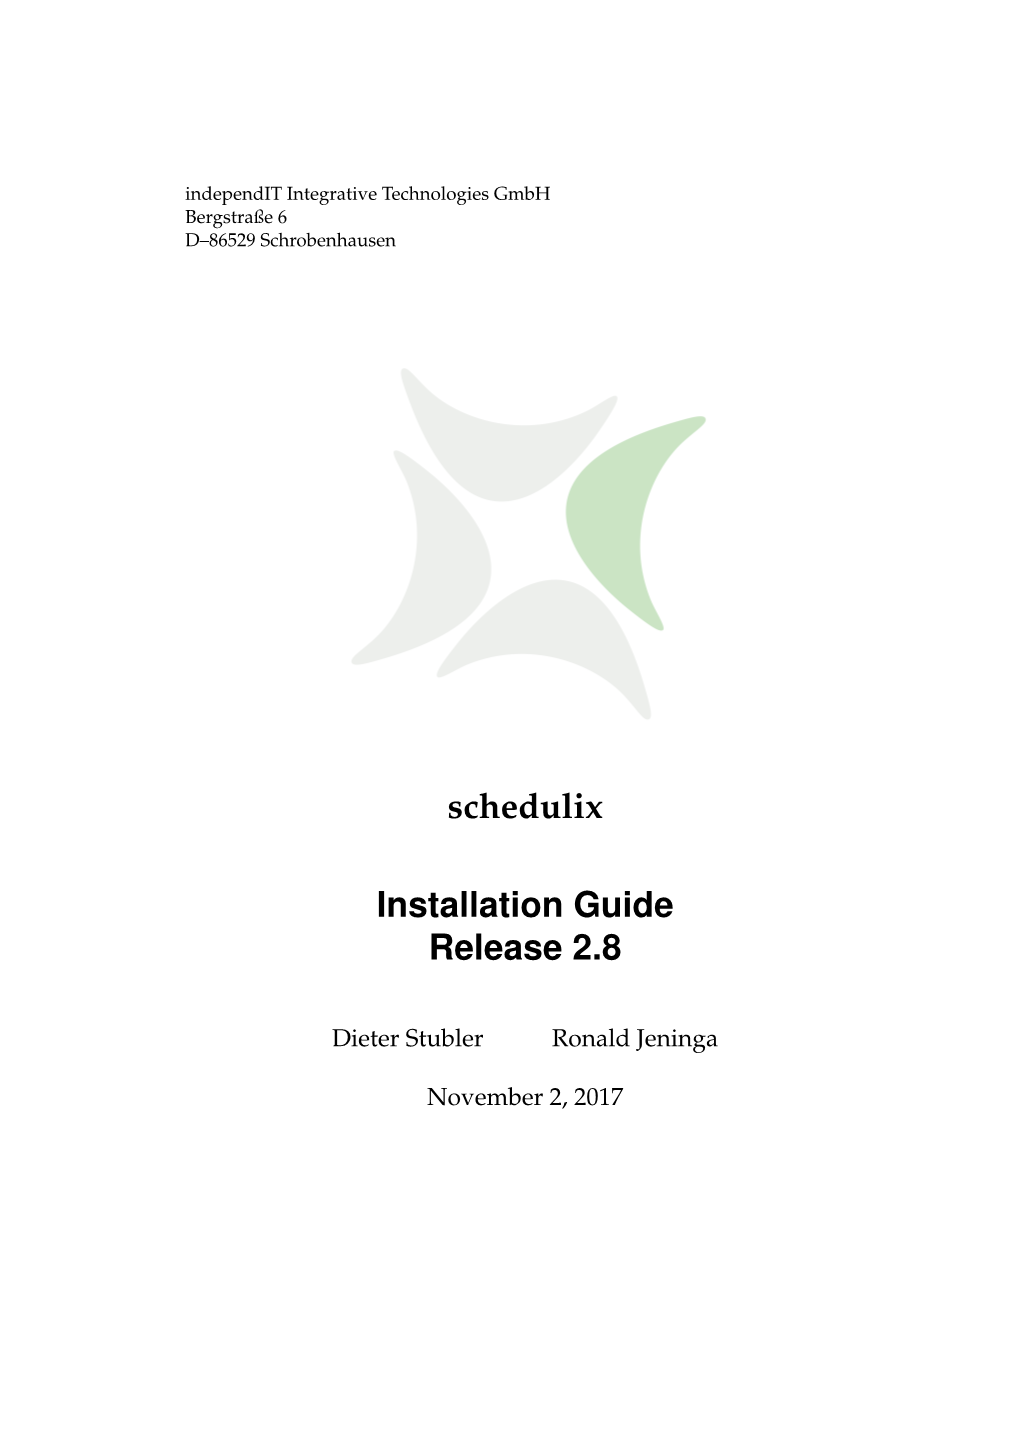 Schedulix Installation Guide Release